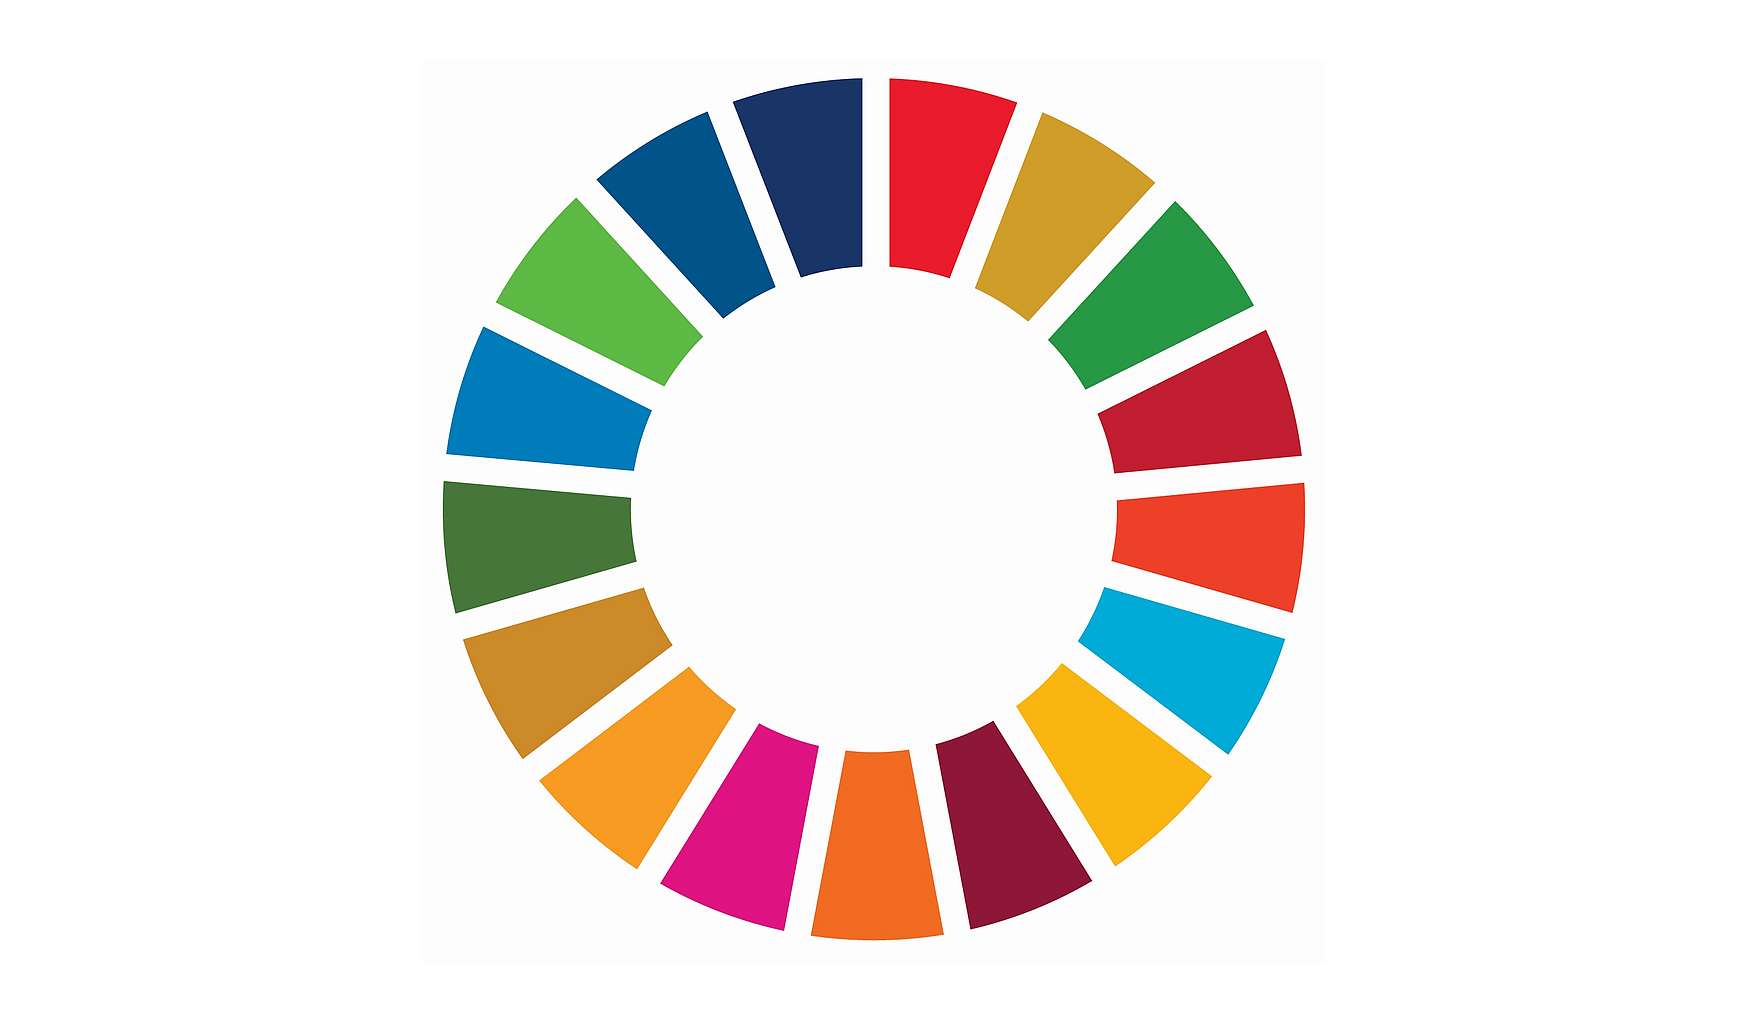 Die 17 SDGs als Farbenrad dargestellt.